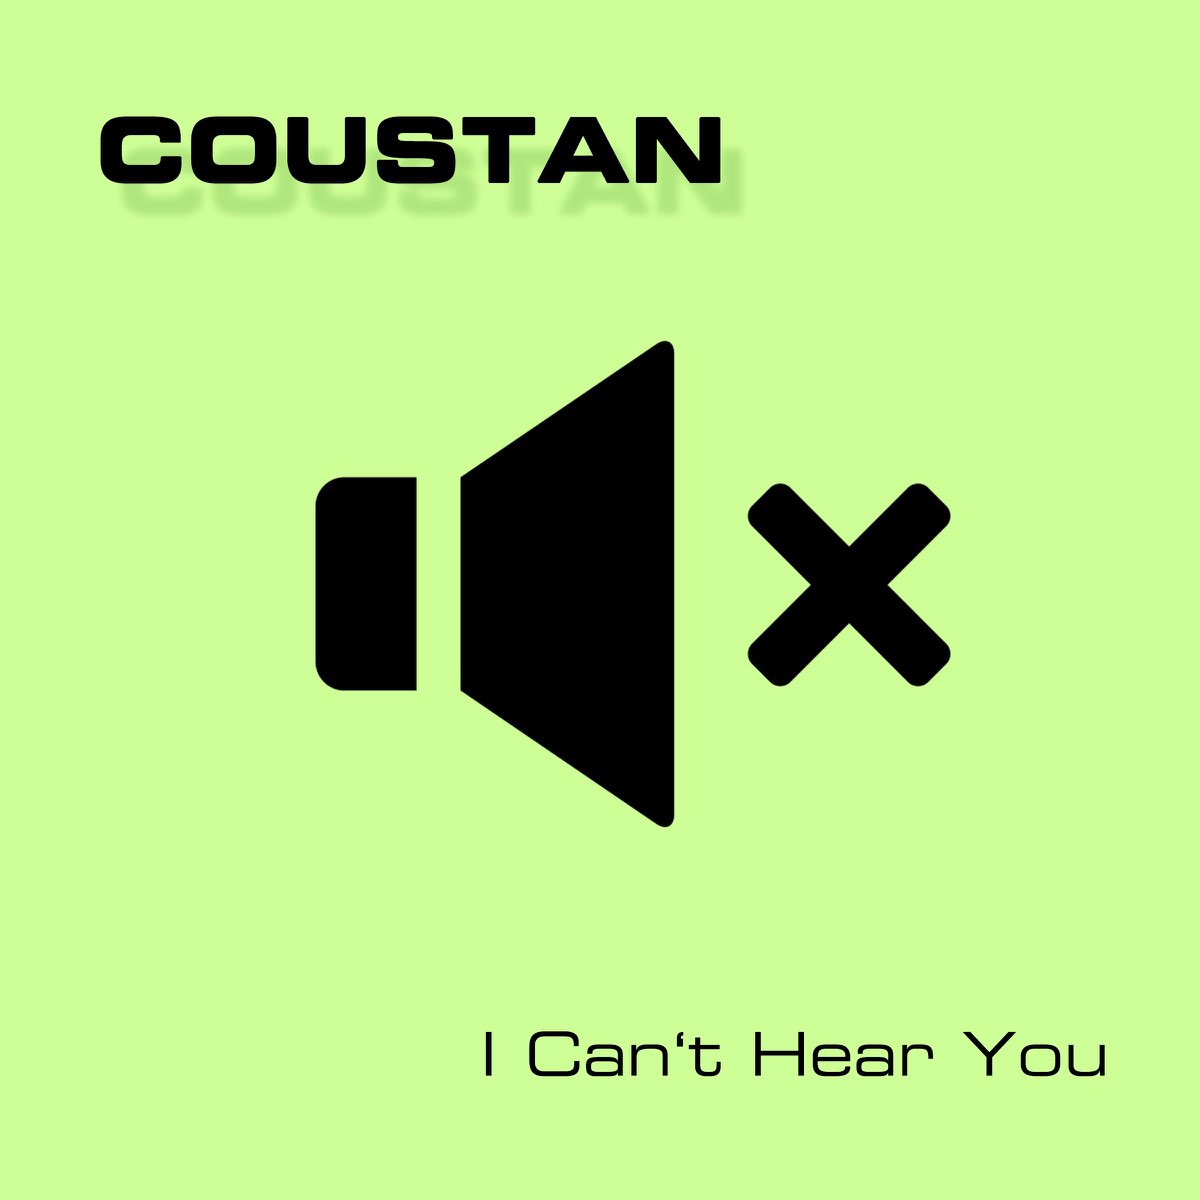 Cant hear